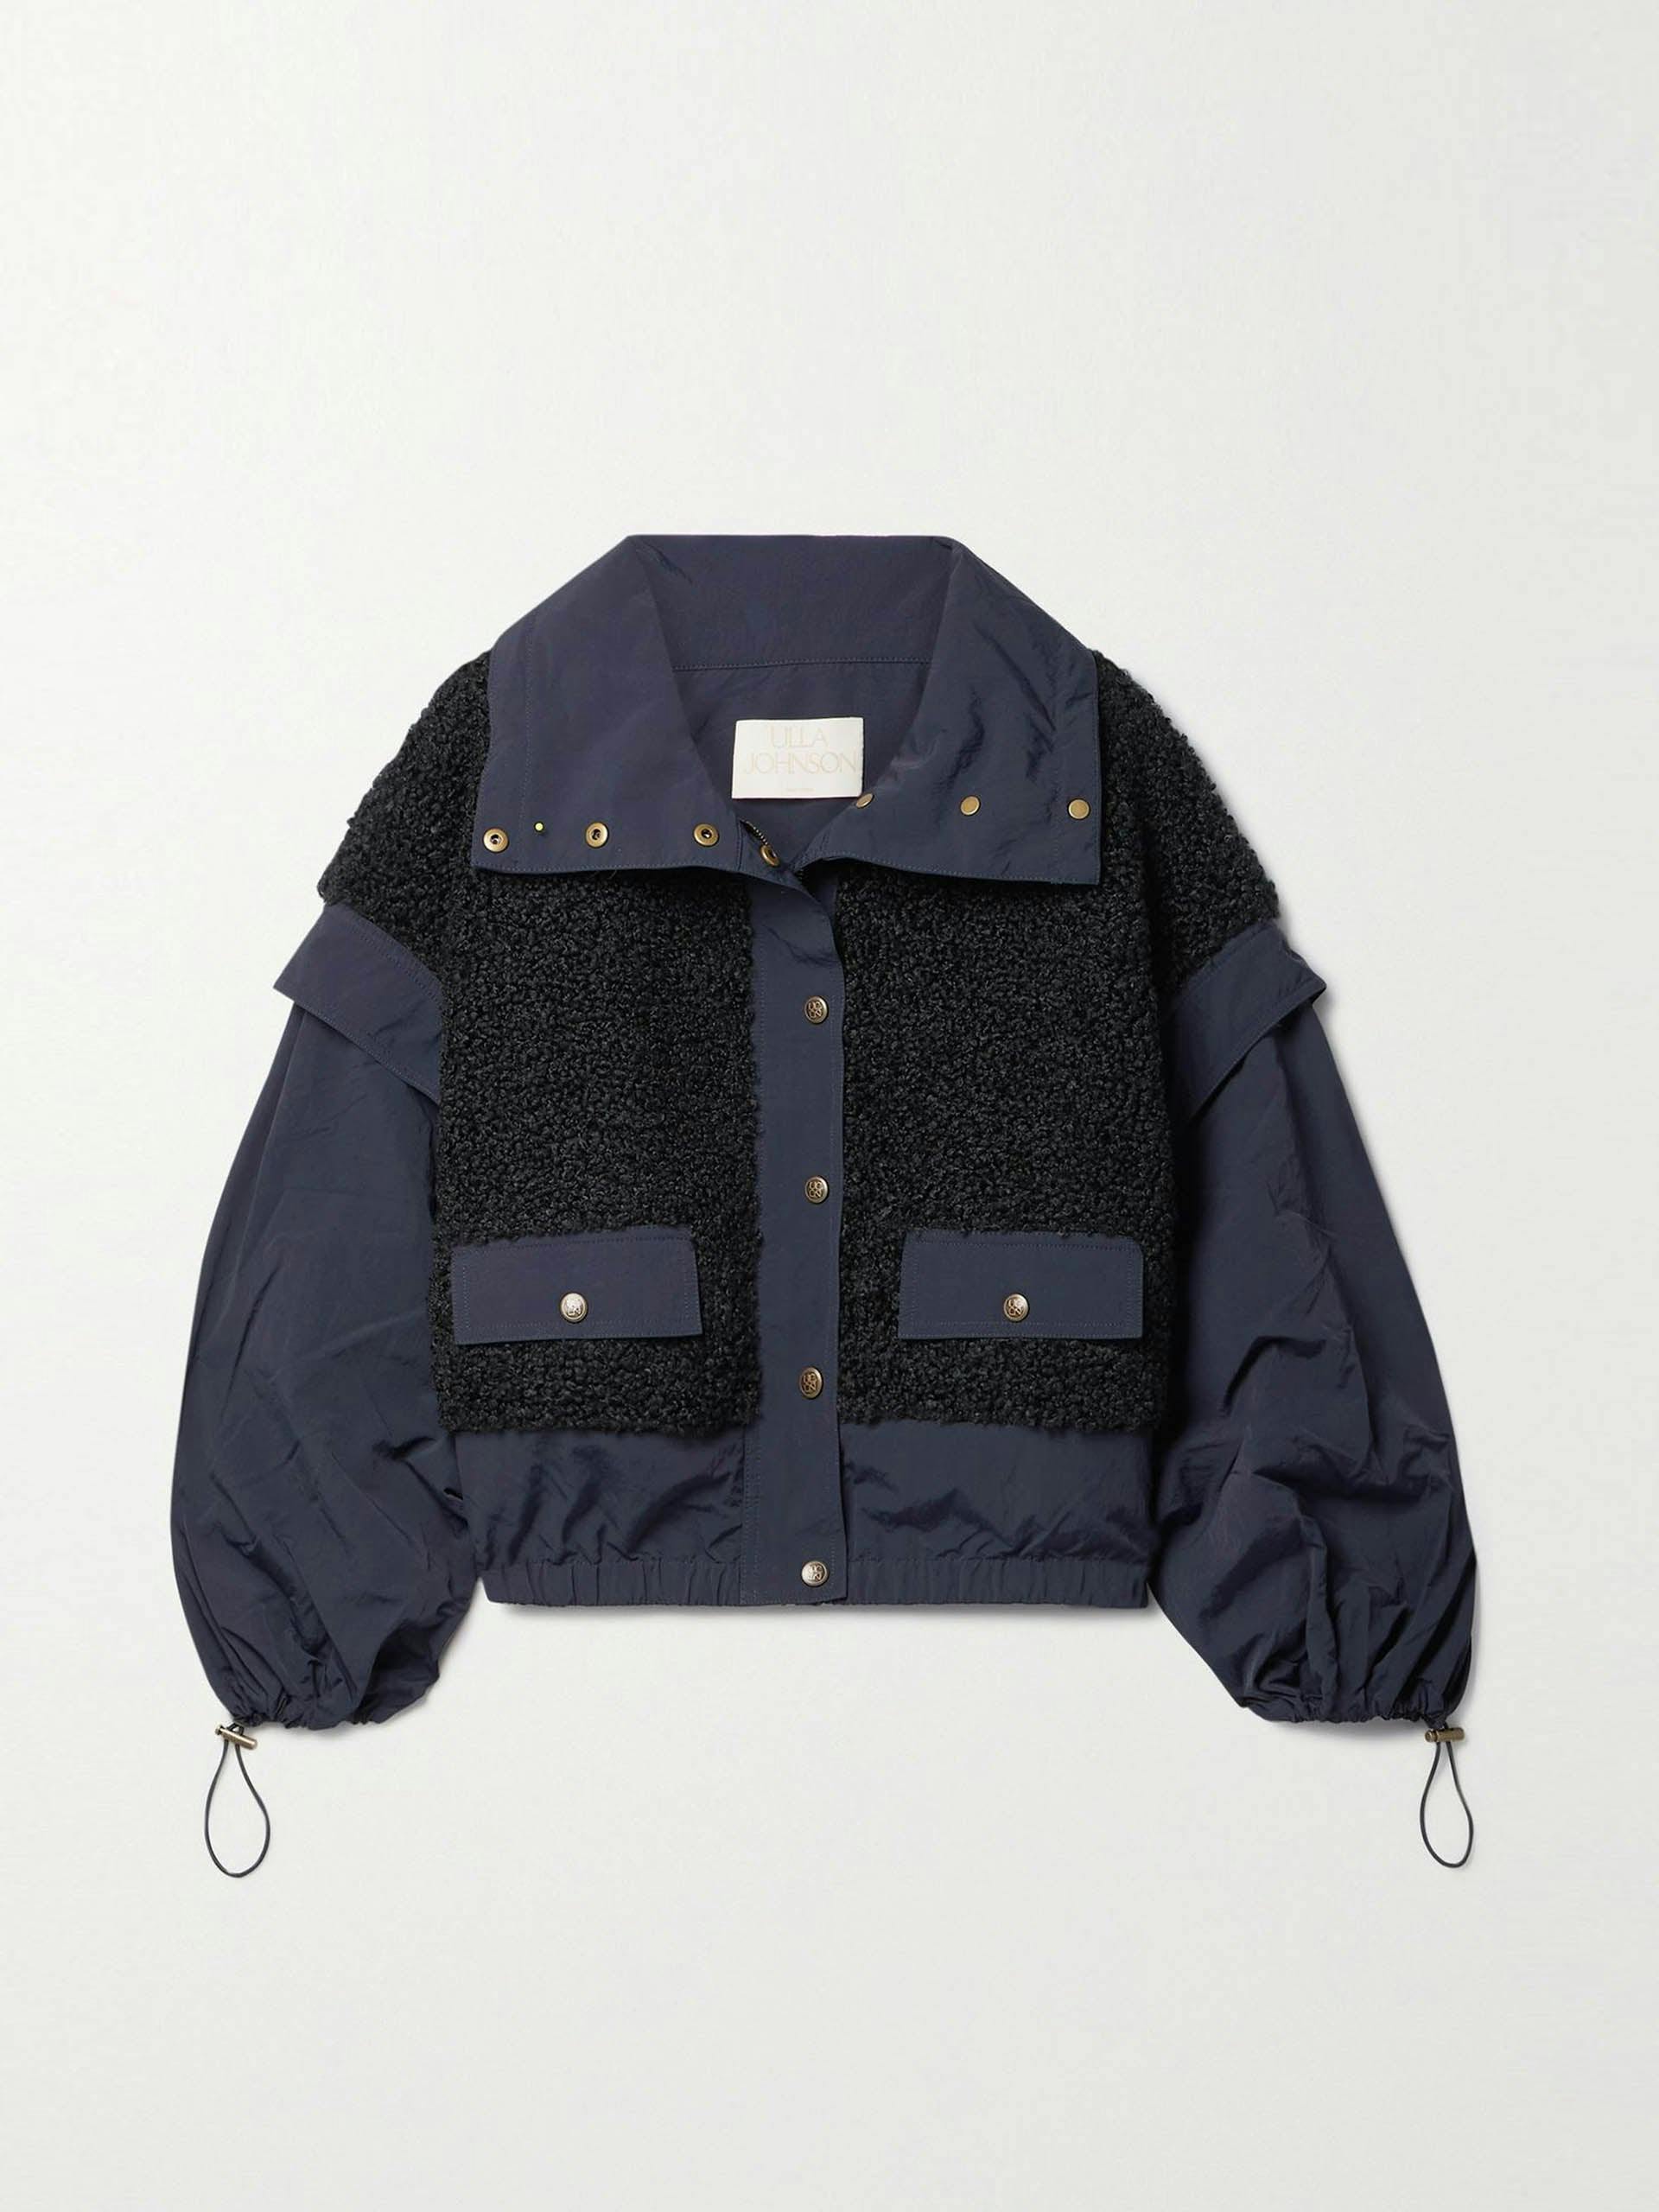 Navy shell and fleece jacket